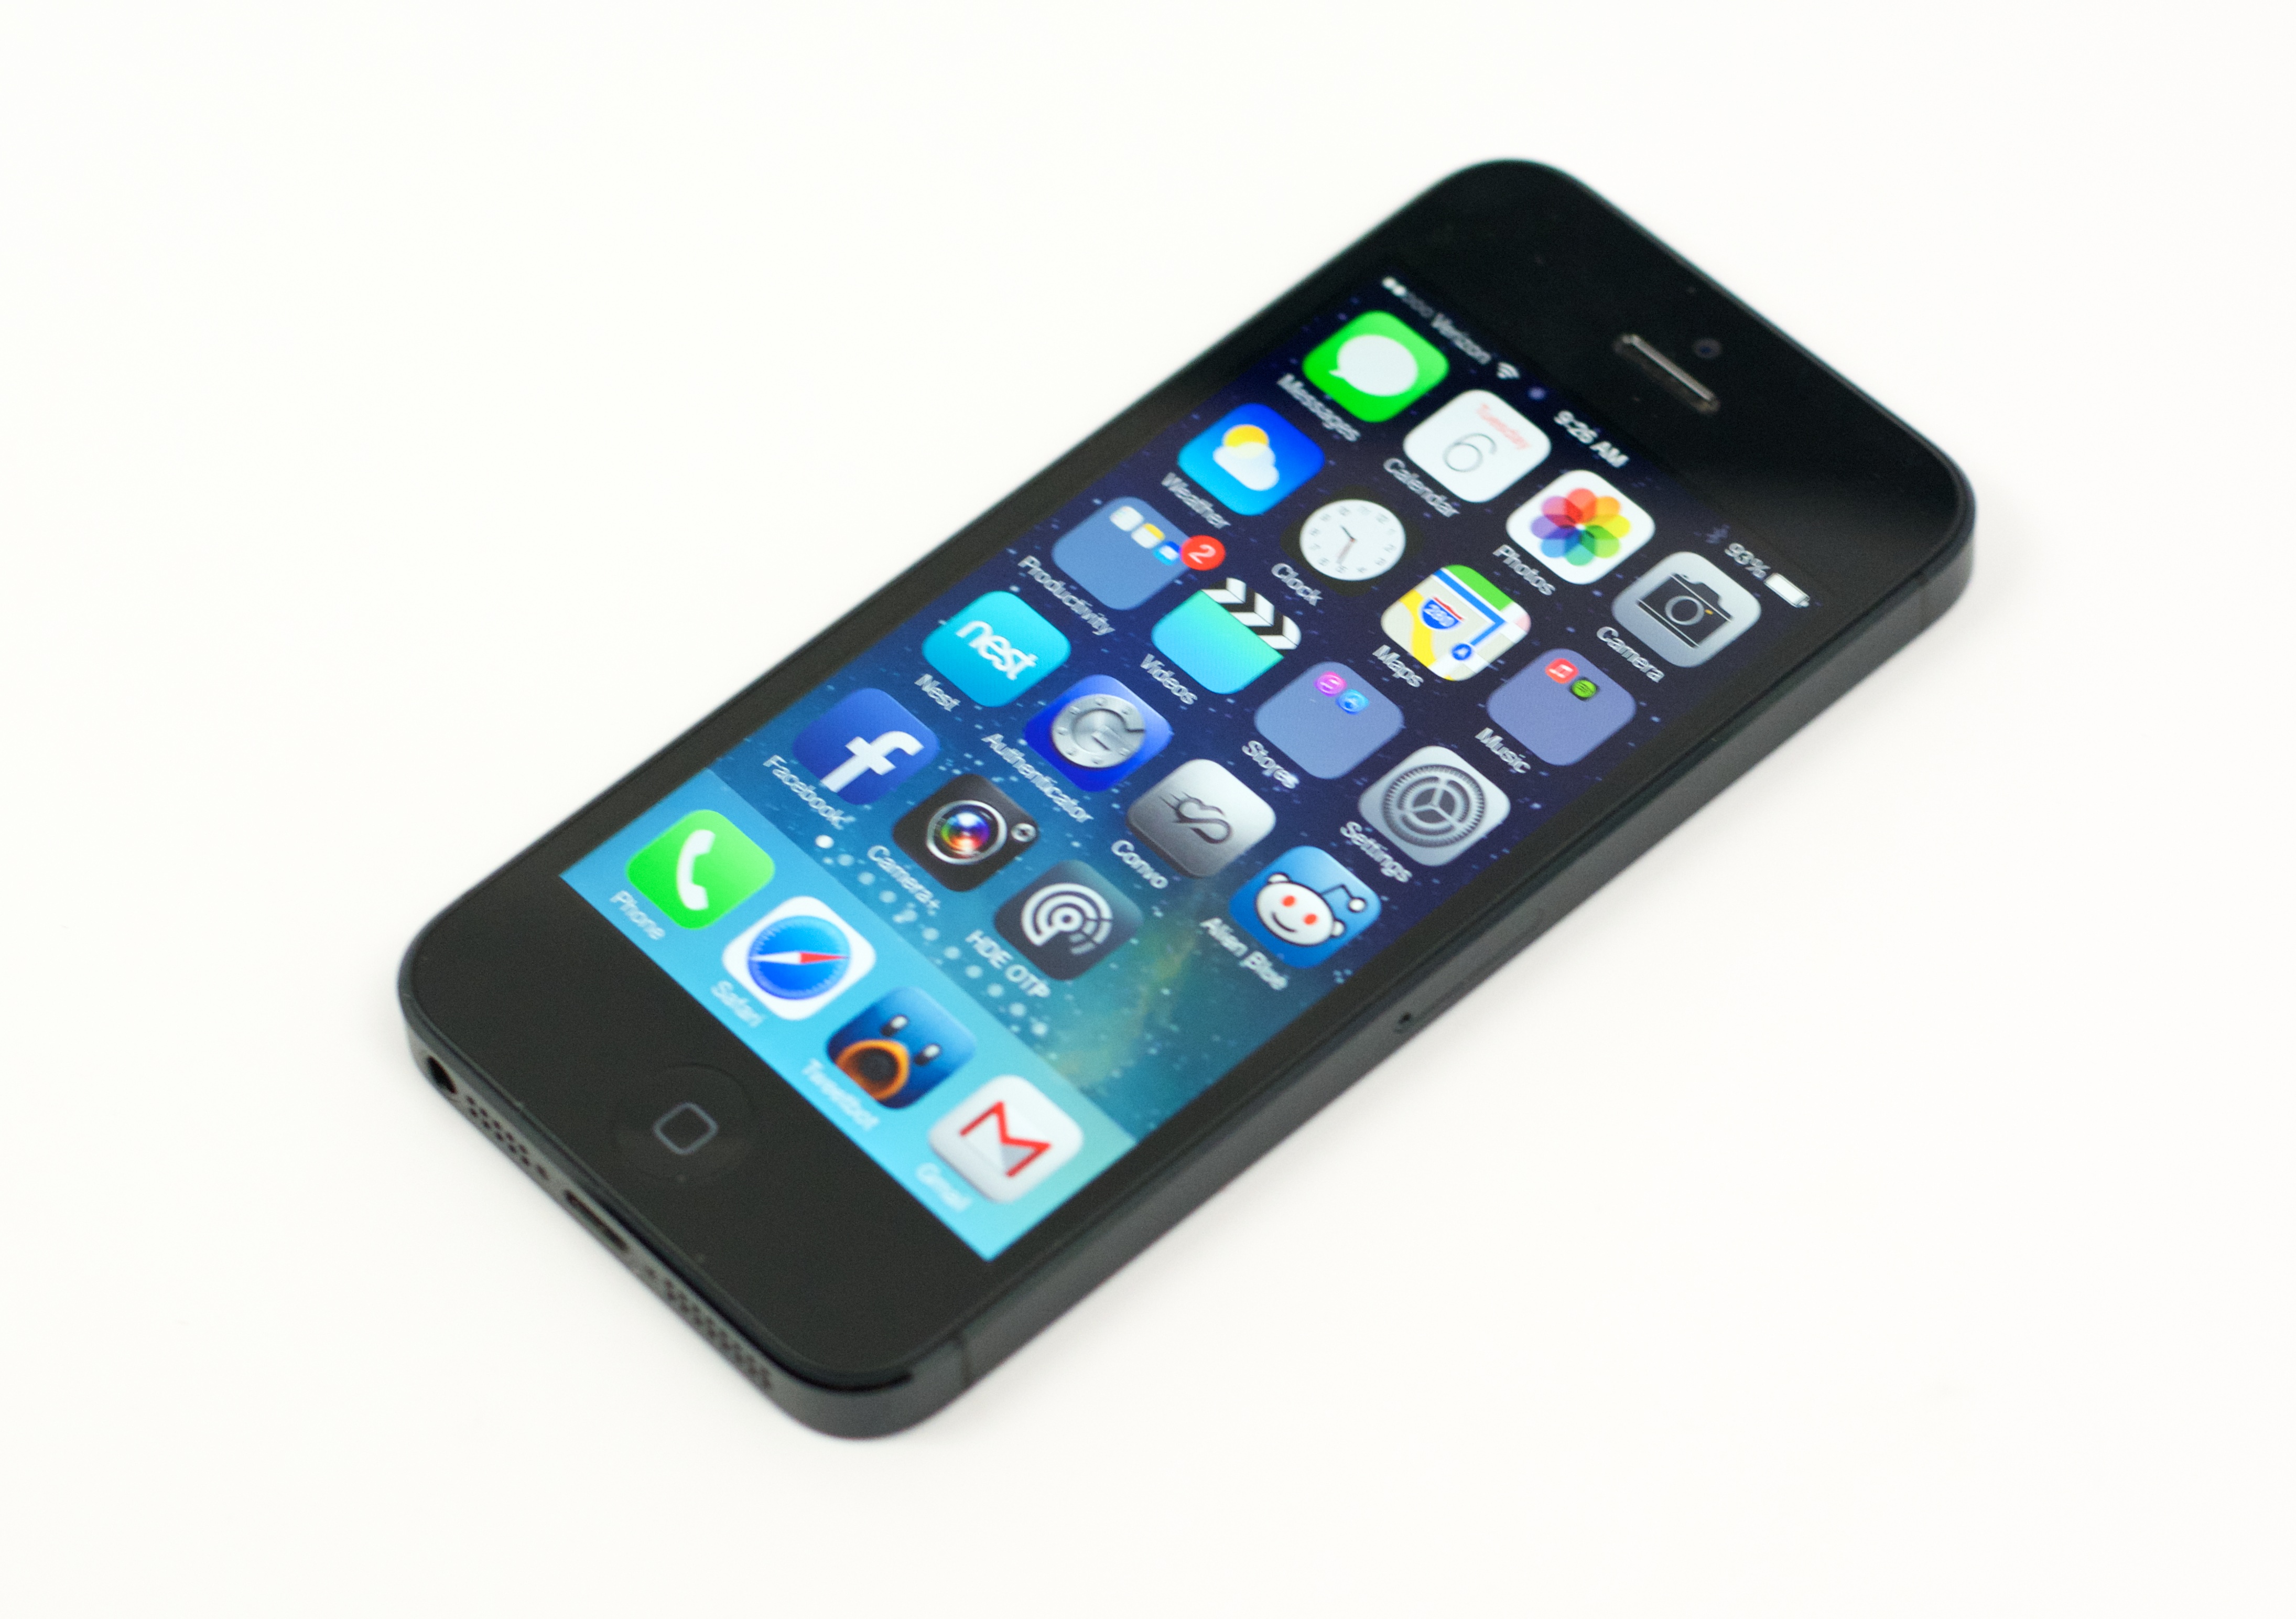 Släppdatumet för iPhone 5S bekräftas av flera källor den 20 september.